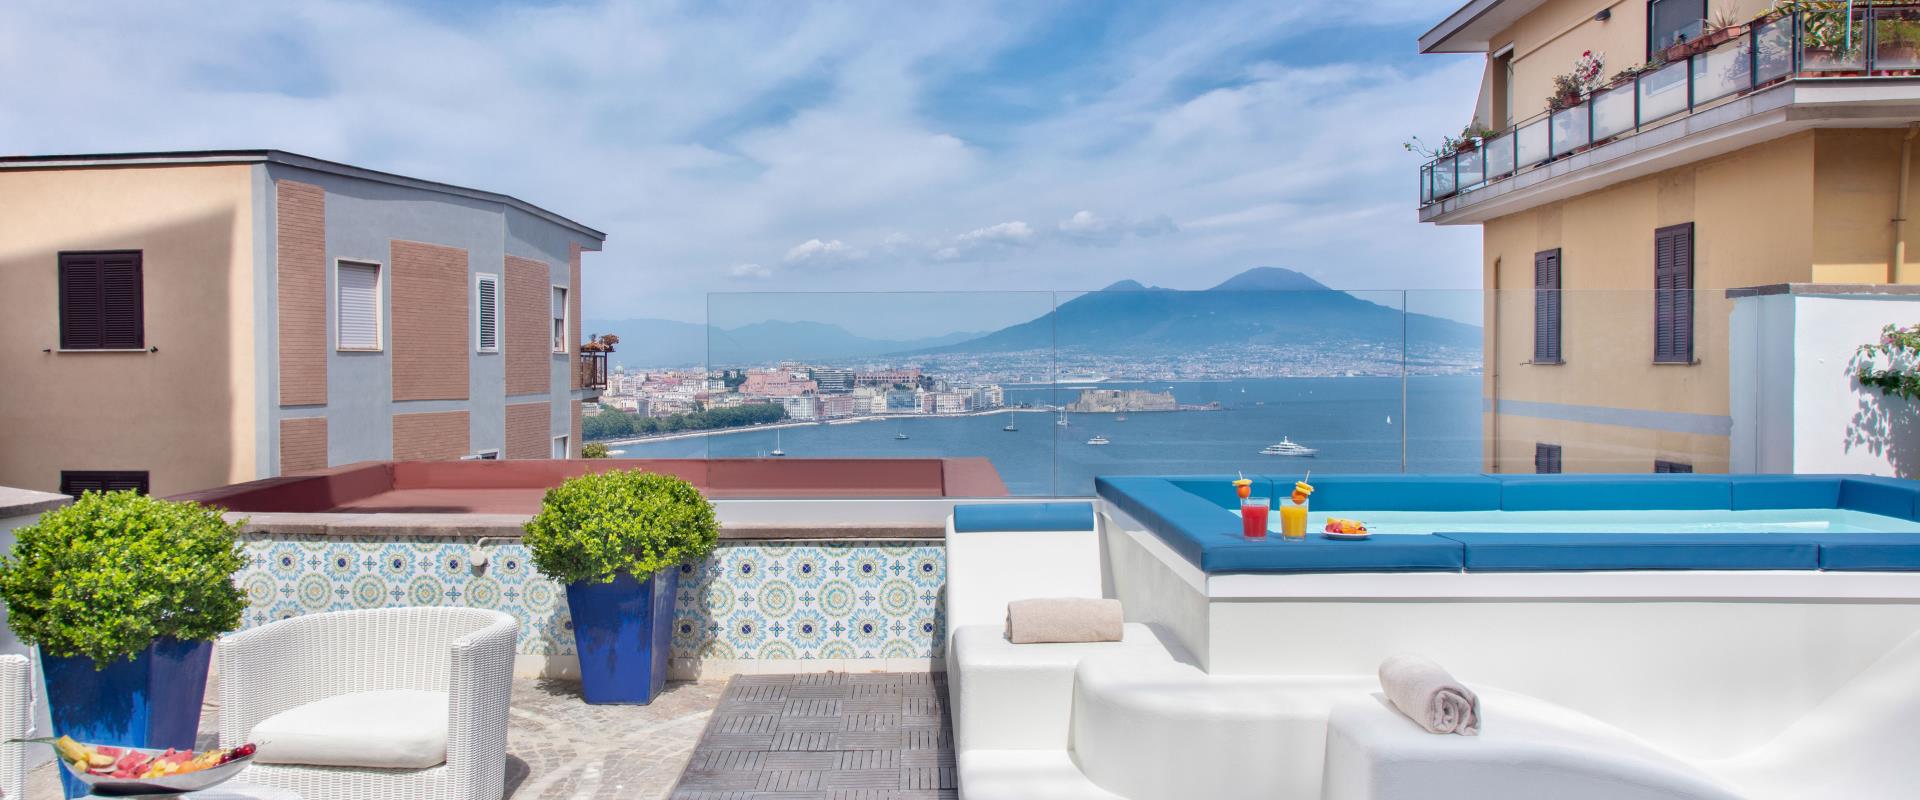 Un refrescante baño con vistas al Golfo de Nápoles